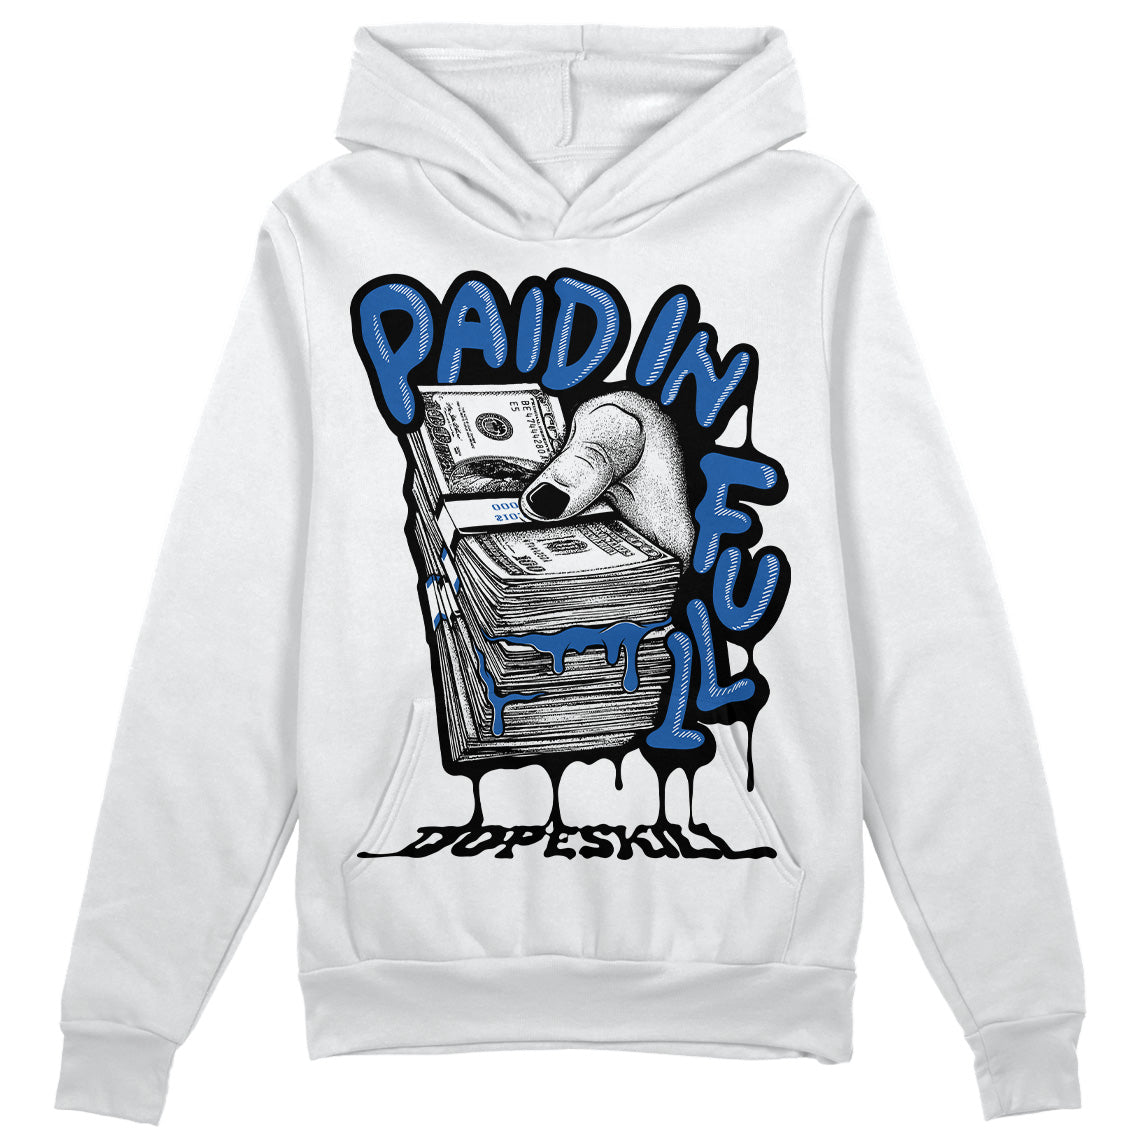 Jordan 11 Low “Space Jam” DopeSkill Hoodie Sweatshirt Paid In Full Graphic Streetwear - White